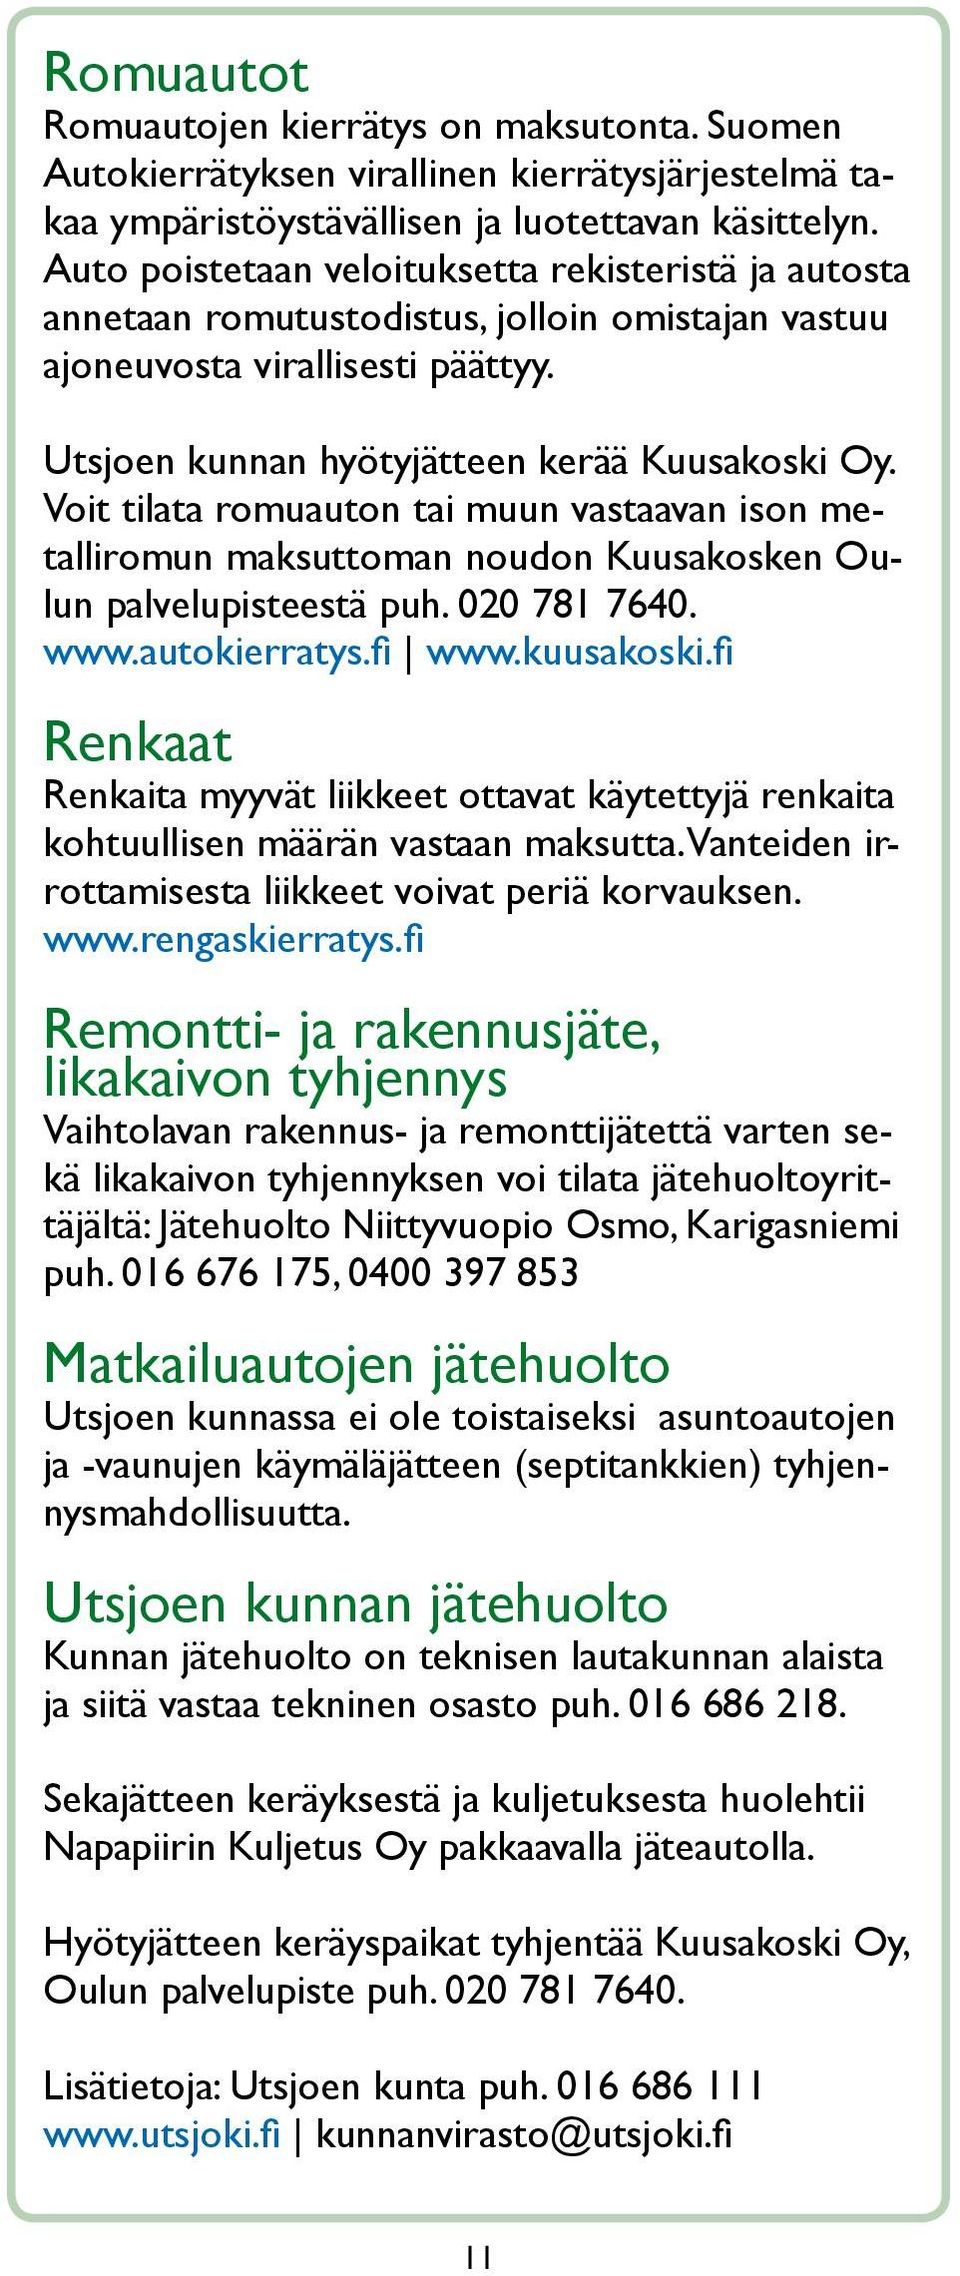 Voit tilata romuauton tai muun vastaavan ison metalliromun maksuttoman noudon Kuusakosken Oulun palvelupisteestä puh. 020 781 7640. www.autokierratys.fi www.kuusakoski.